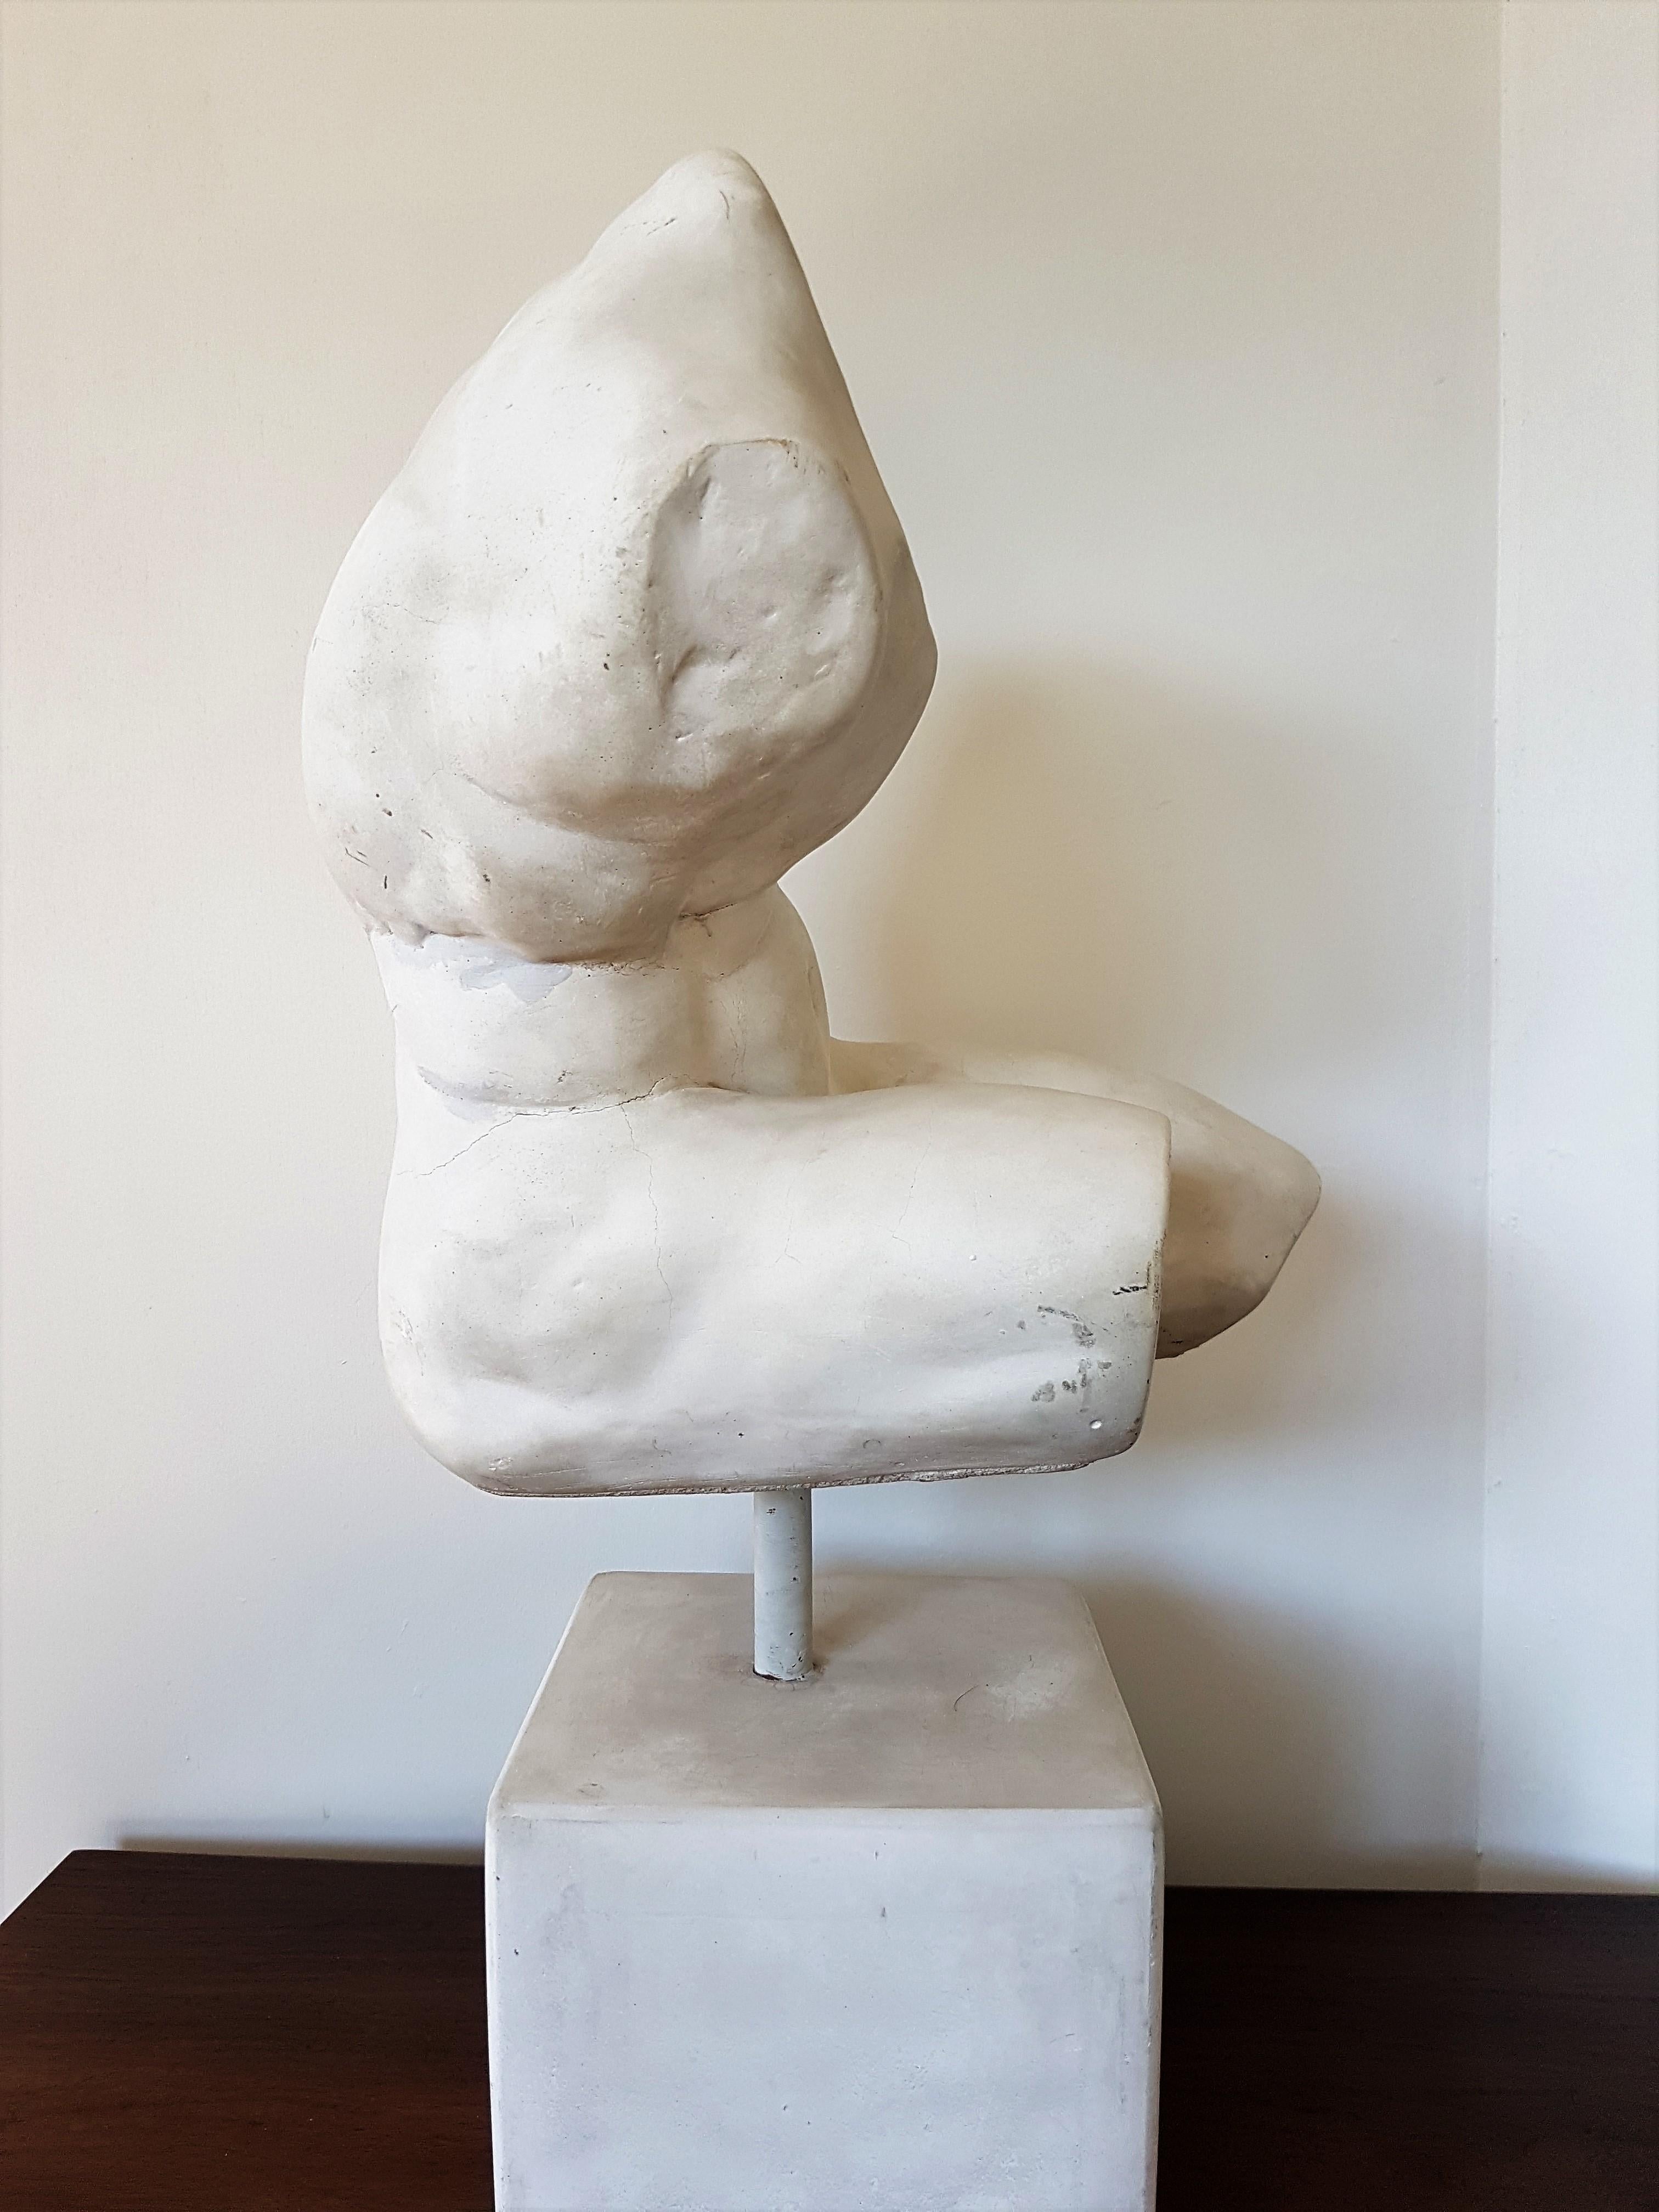 Italian Marble Sculpture of “The Belvedere Torso